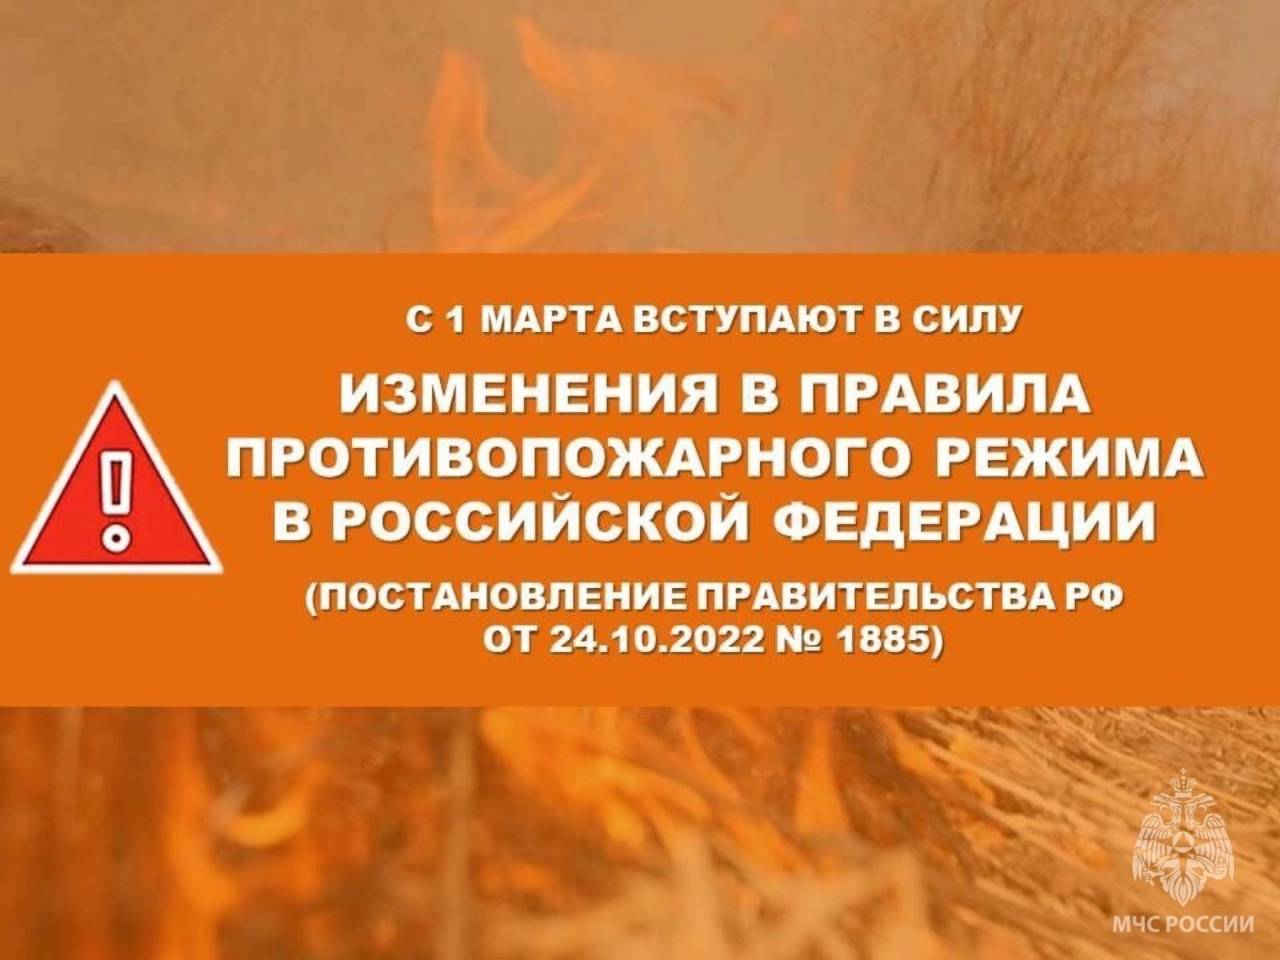 С 1 марта вступили в силу изменения в Правилах противопожарного режима